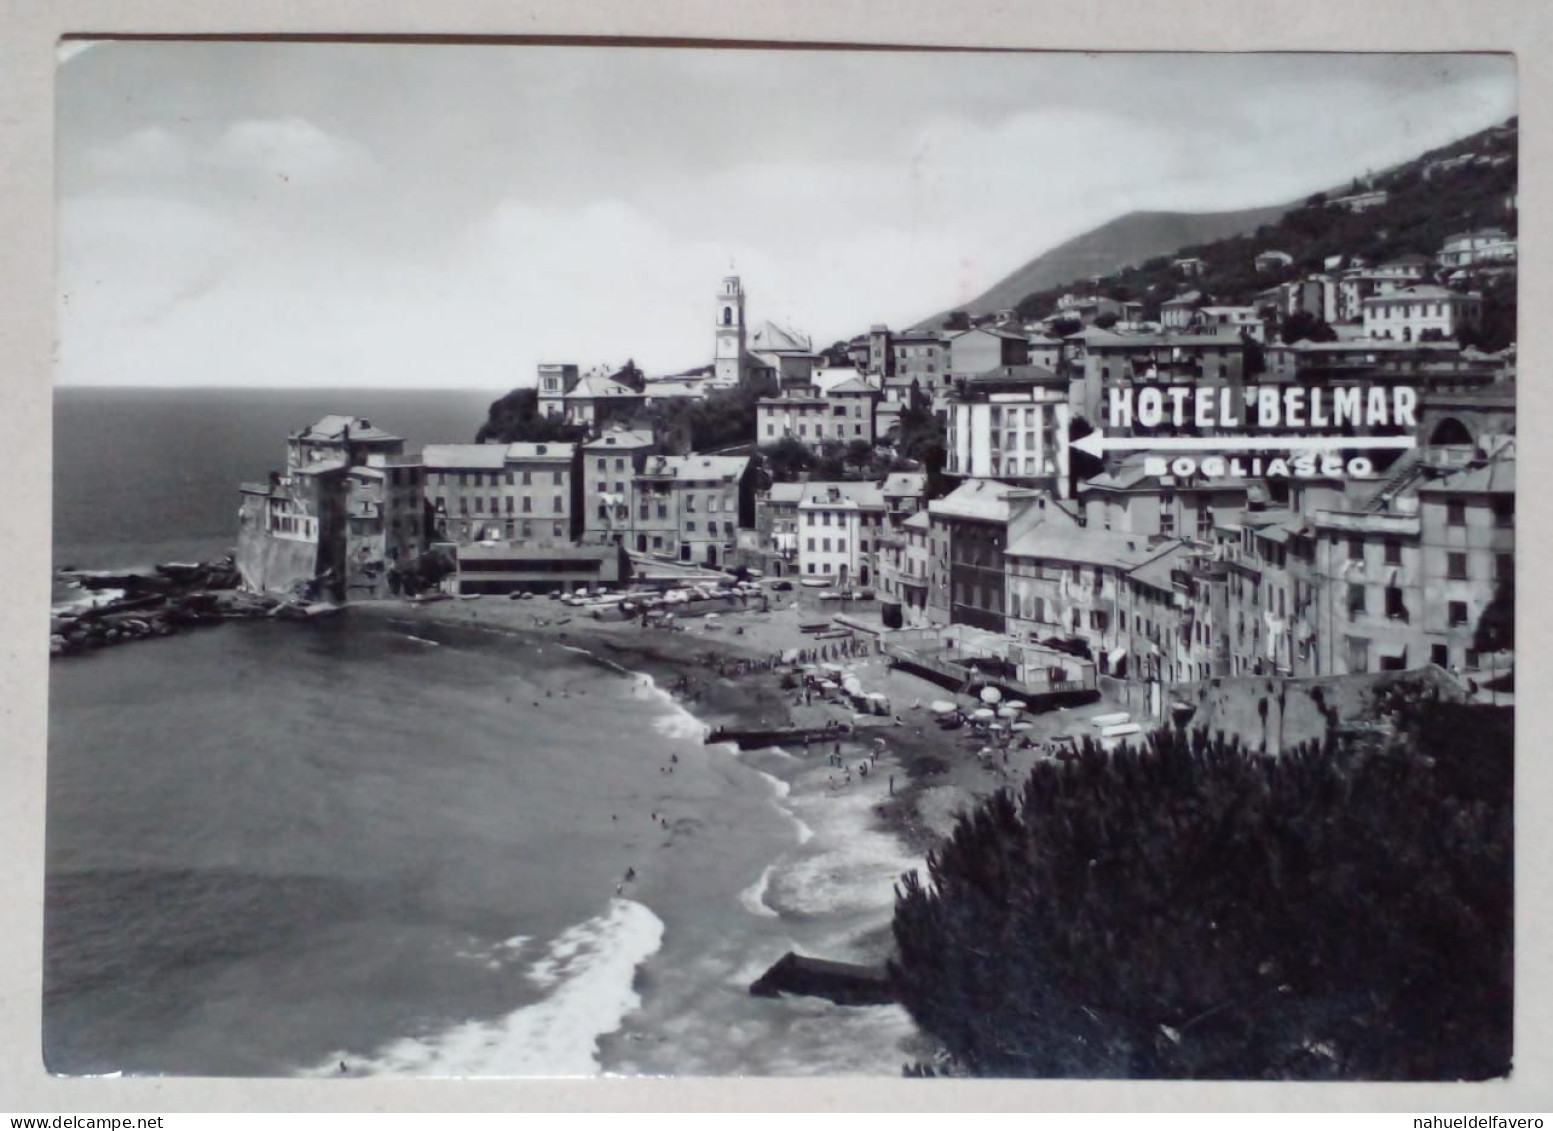 Carte Postale - Hôtel Belmar, Gênes, Italie. - Hotels & Restaurants